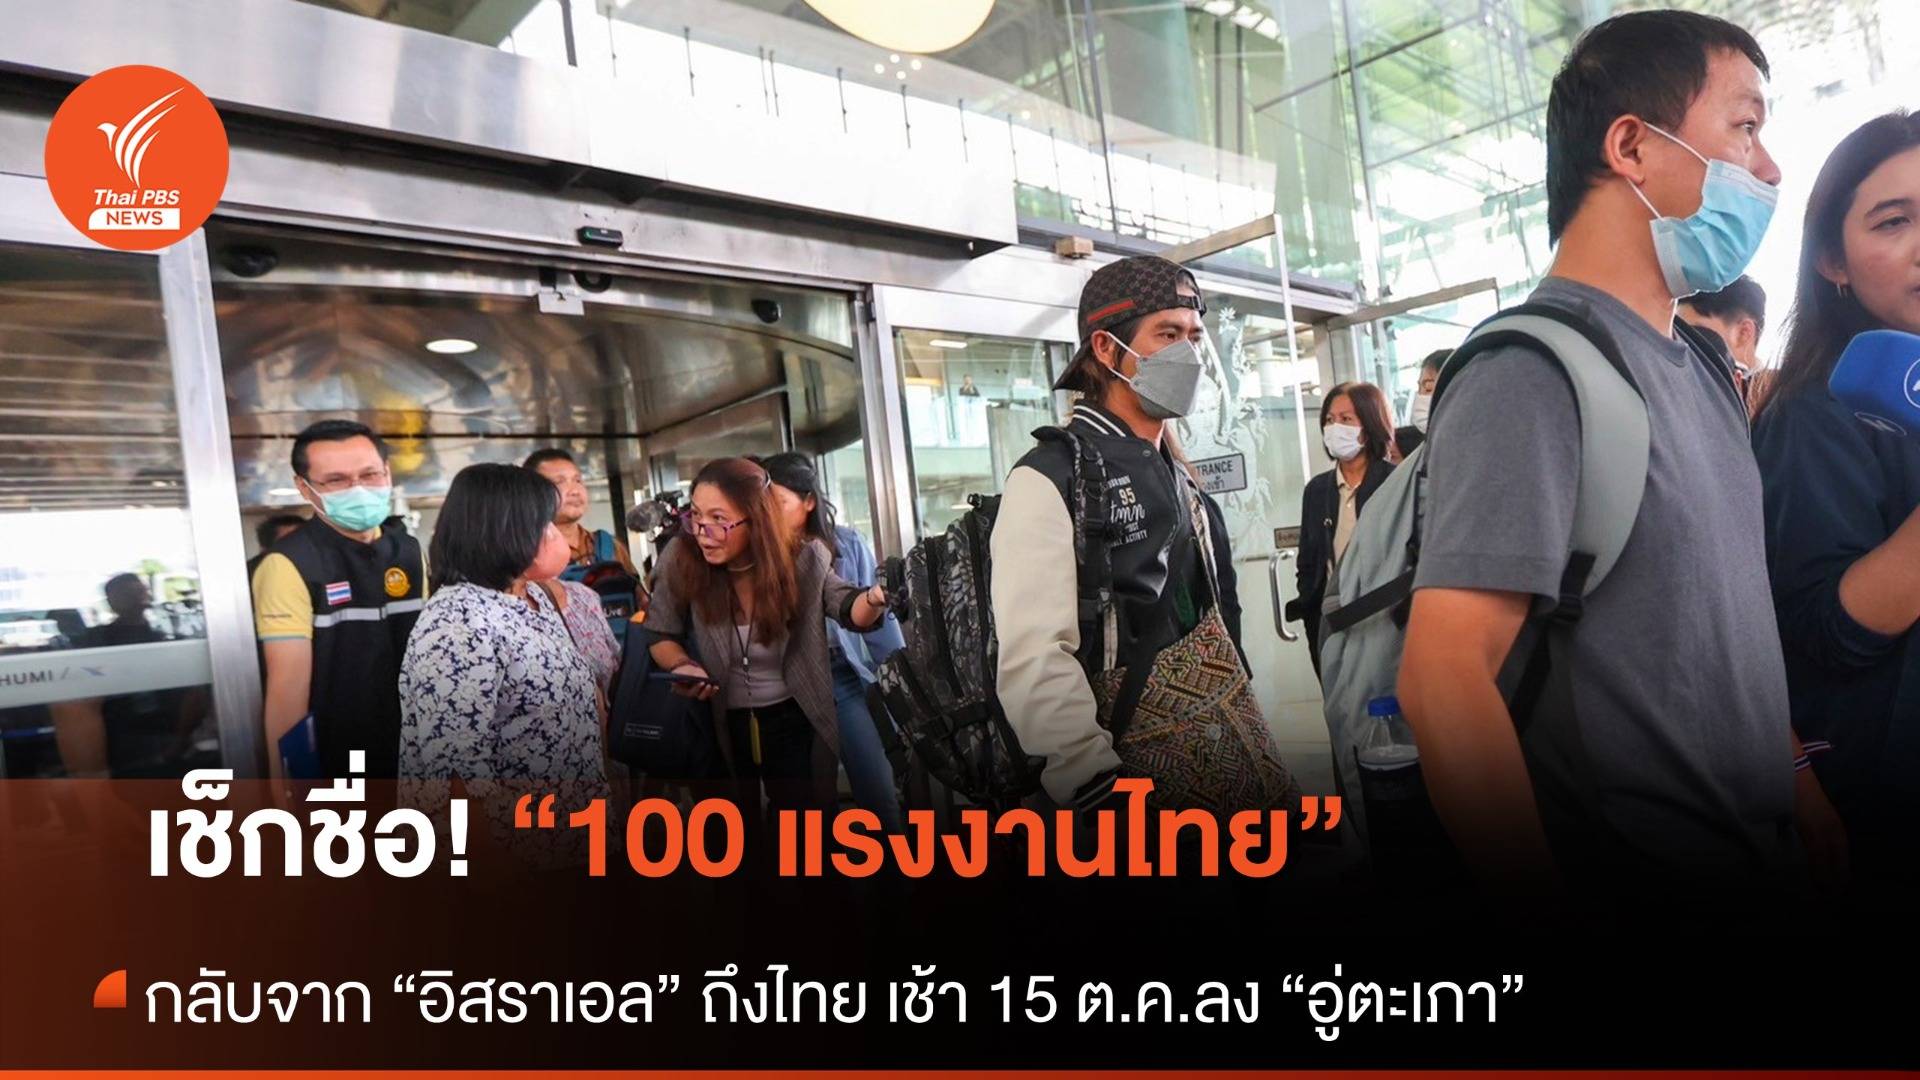 เช็กชื่อ! 100 คนไทย บินกลับจาก “อิสราเอล” ถึงไทยเช้า 15 ต.ค.ลงอู่ตะเภา